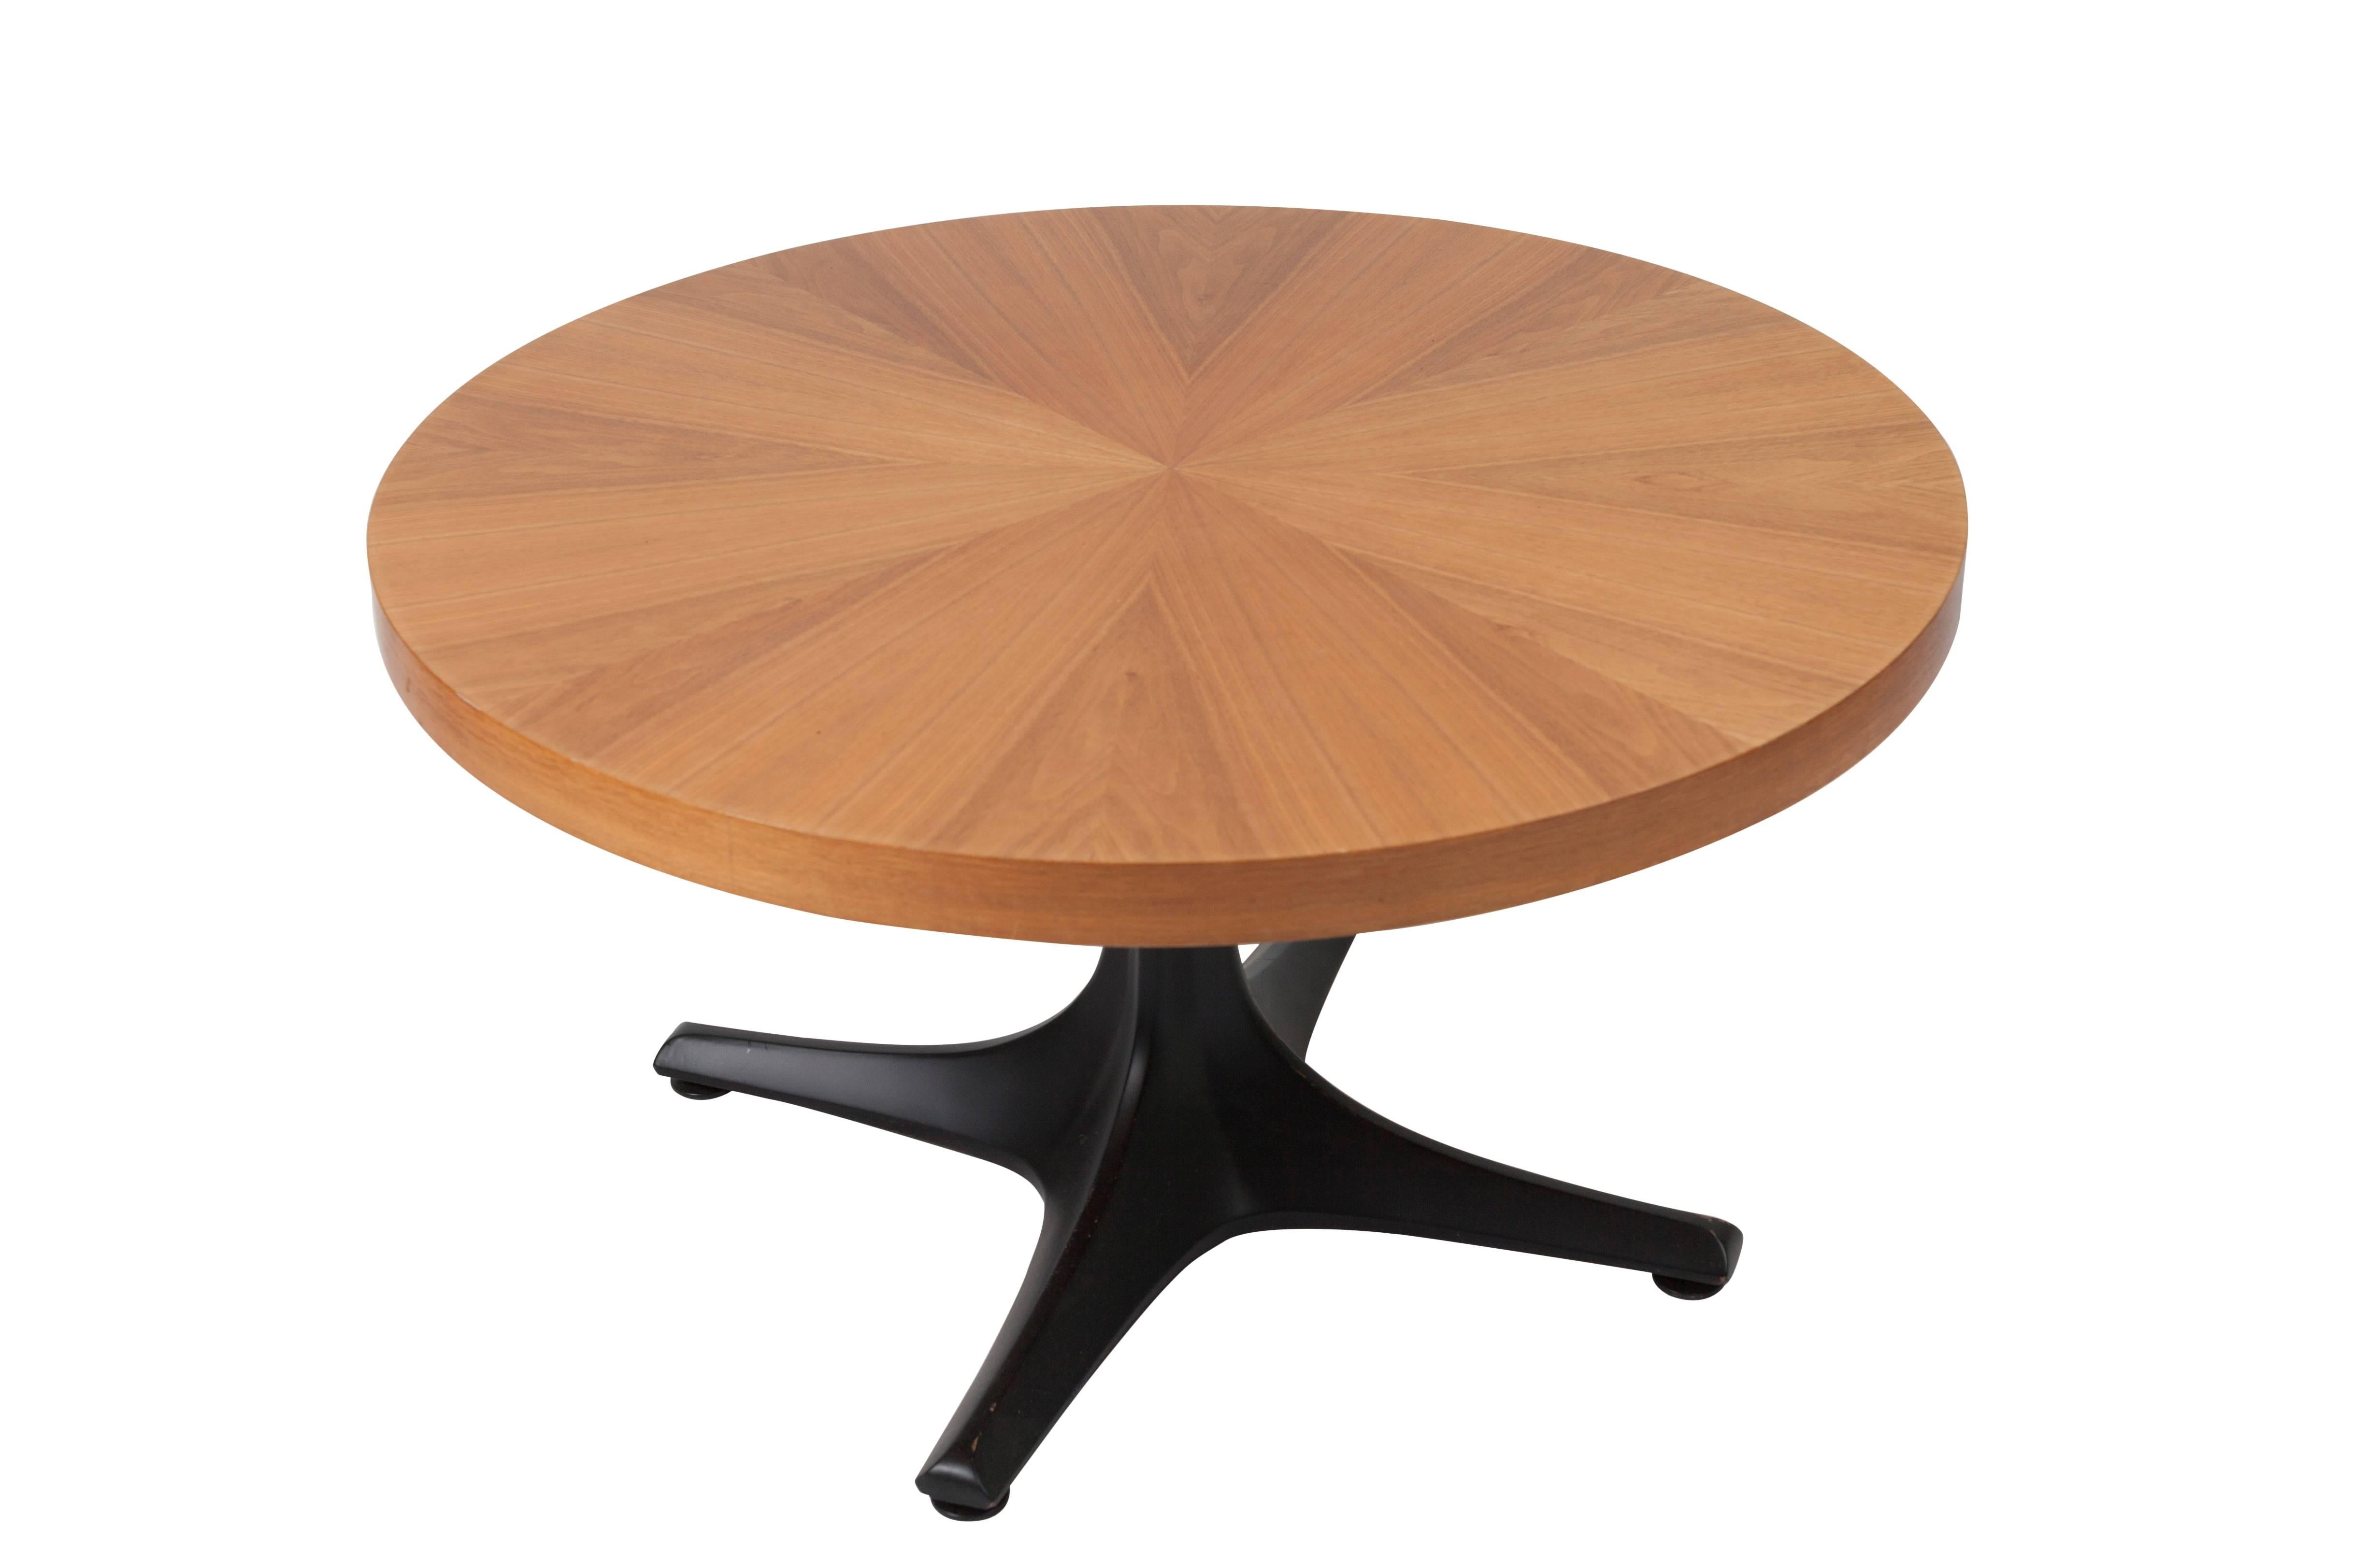 Dieser Tisch von Ilse Möbler kann sowohl als Esstisch als auch als Couchtisch verwendet werden, je nachdem, welche Höhe Sie gerade benötigen.

Als Esstisch ist er 75 cm hoch (ca. 30 Zoll). Durch Ziehen des Griffs kann er in jede gewünschte Position